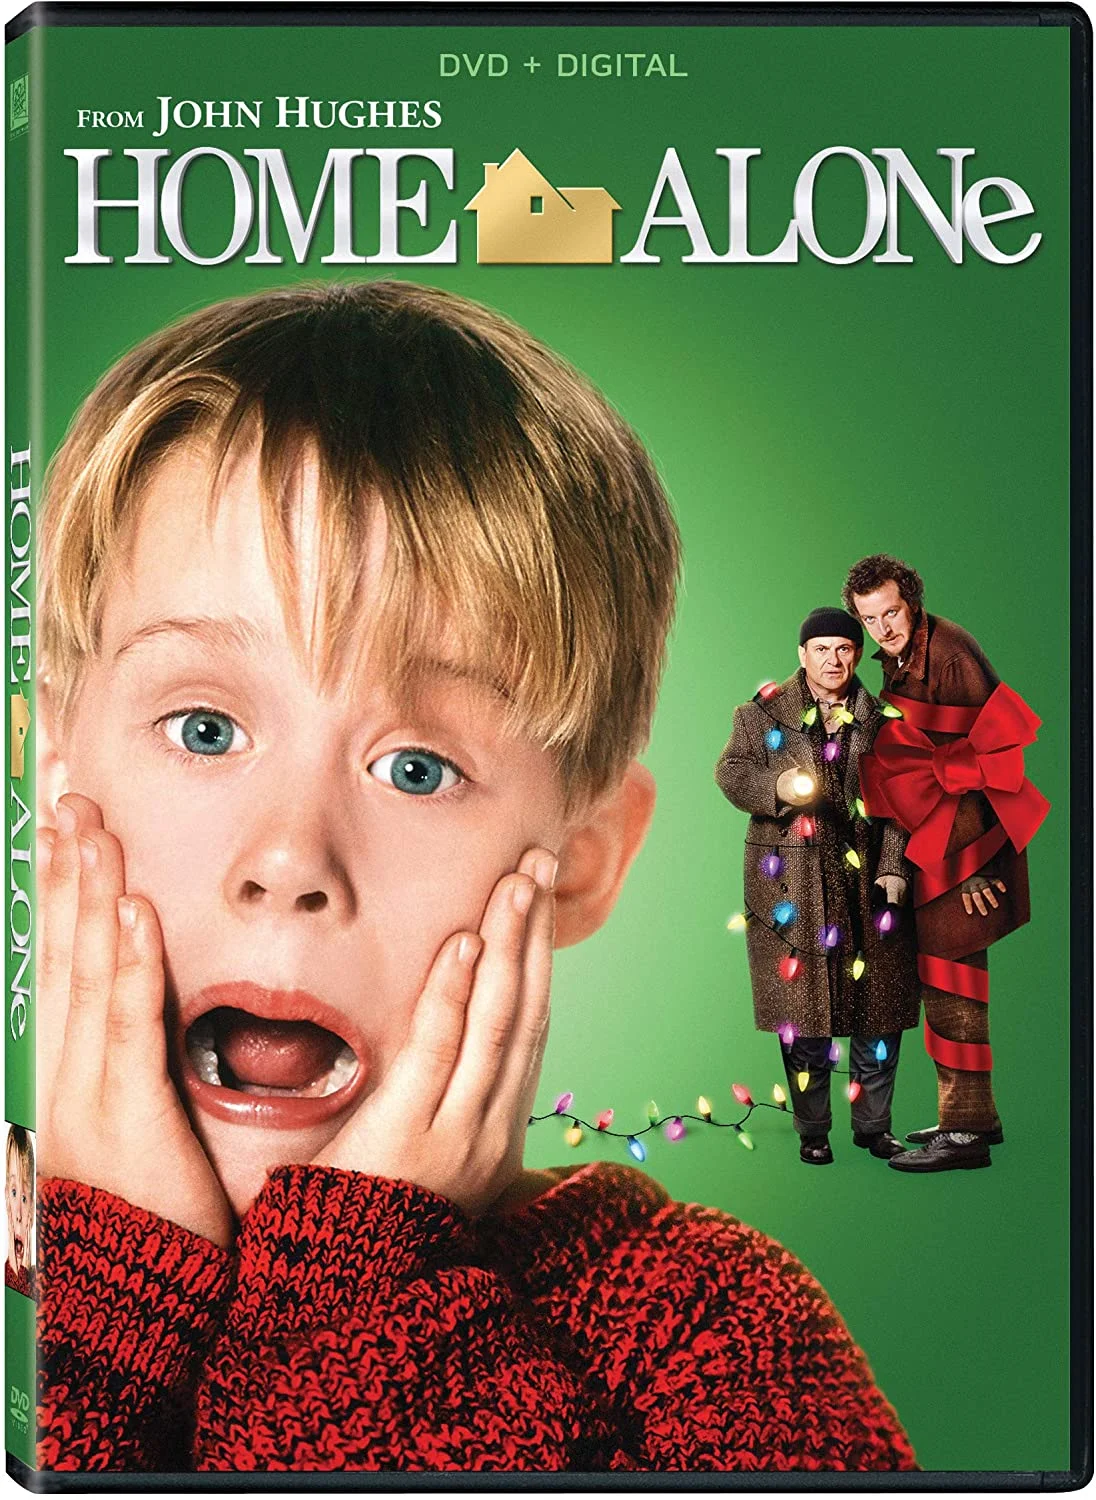 Home Alone – 25th Ann. Ed. (DVD) on MovieShack